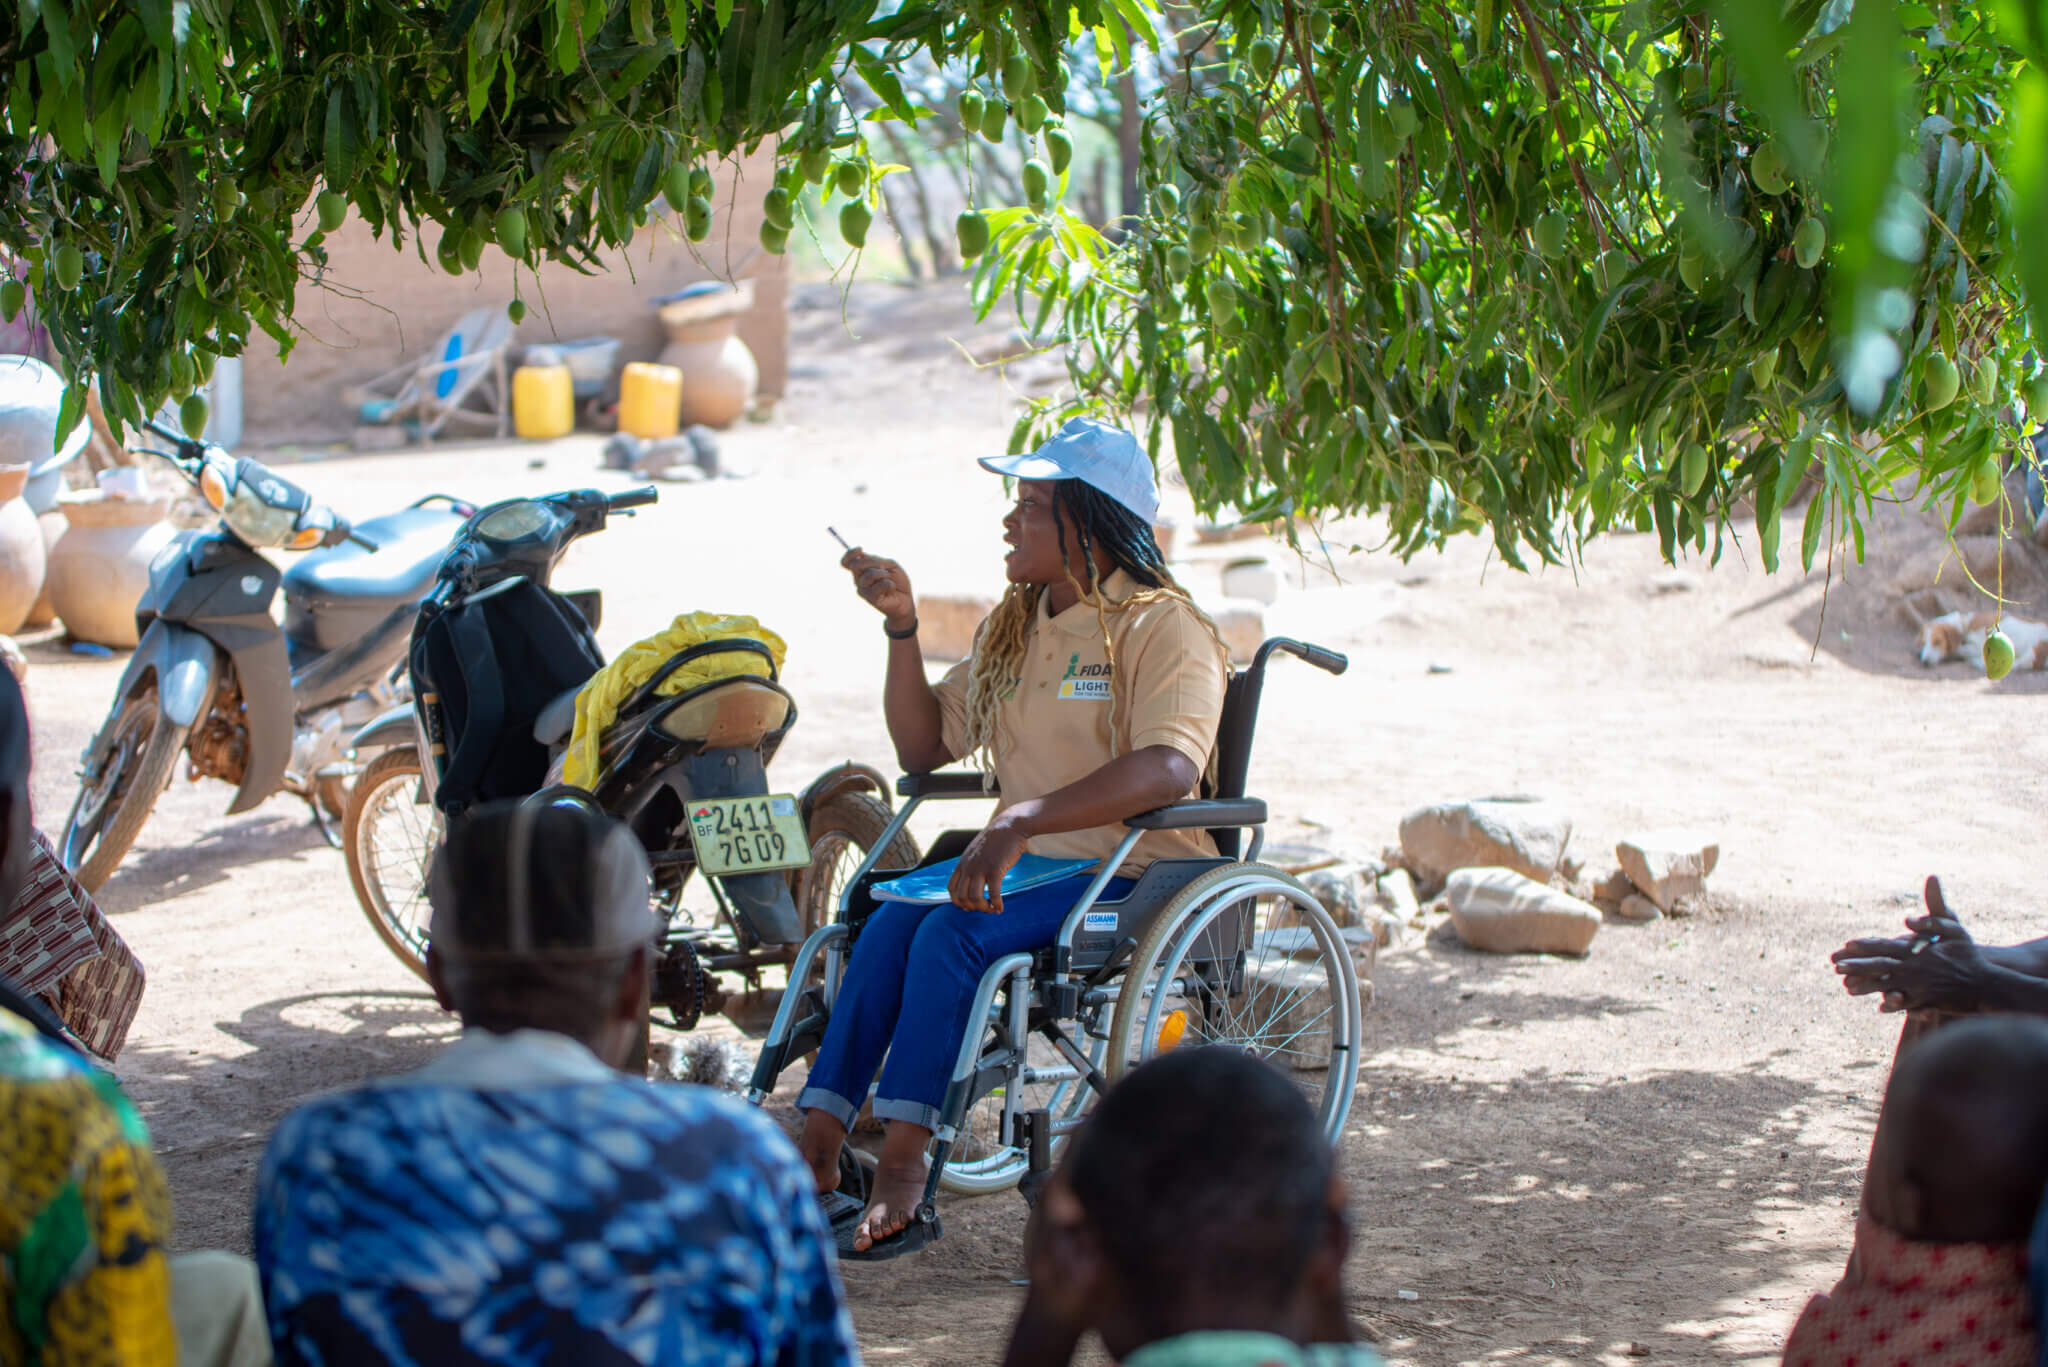 Inklusionsberaterin Brigitte Dah aus Burkina Faso erklärt den teilnehmenden Frauen und Männern mit Behinderungen